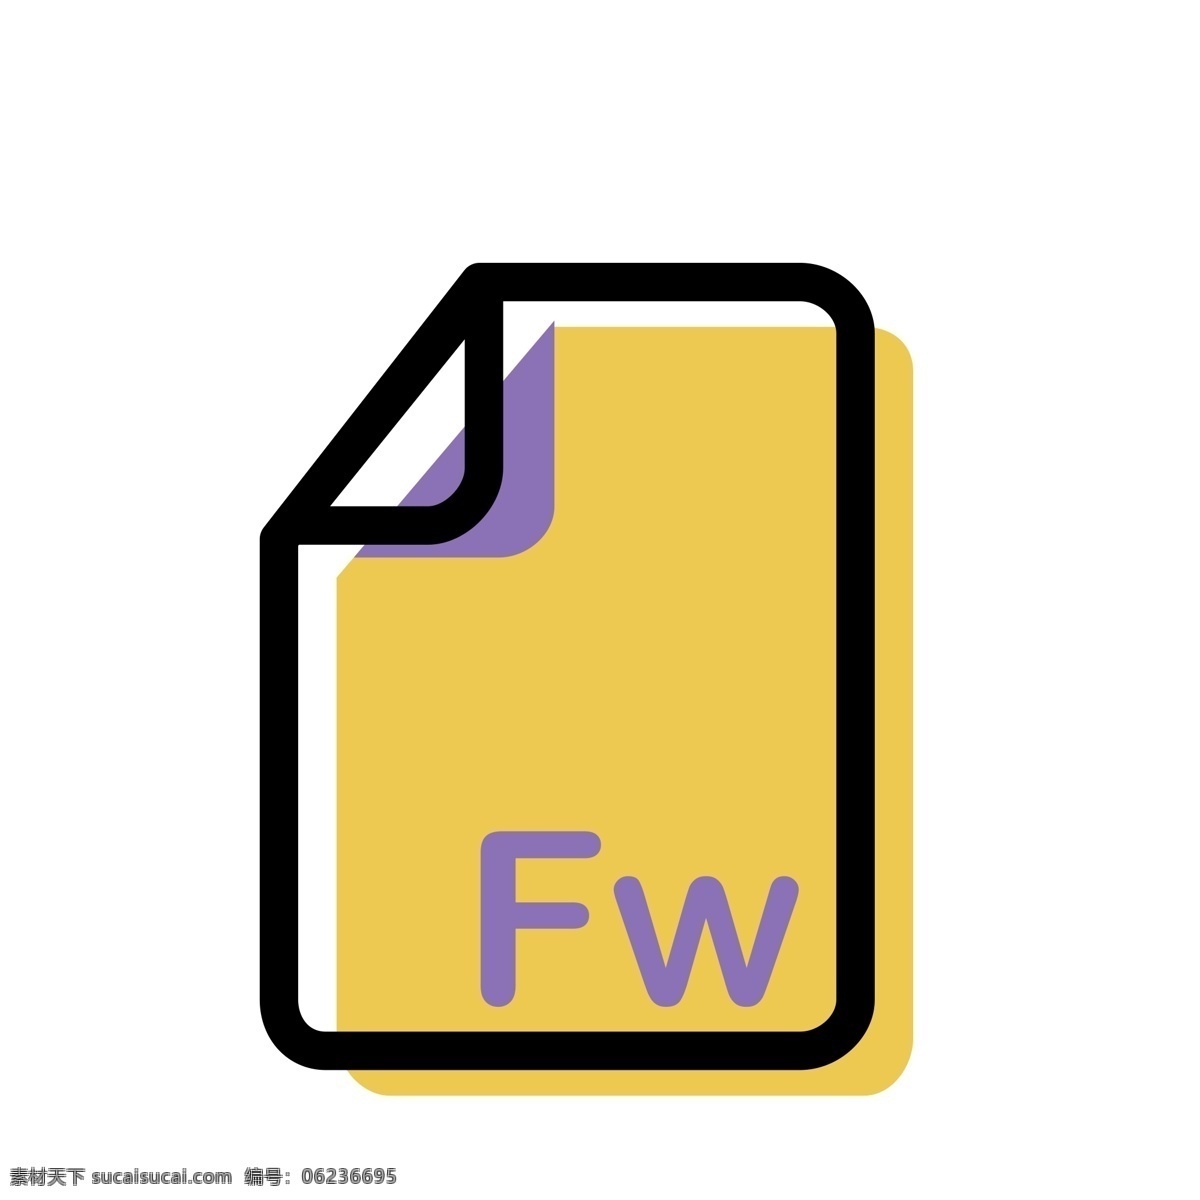 fw 格式 文件 图标 免 抠 图 fw格式图标 格式文件 ui应用图标 电脑文件图标 软件图标 卡通图案 卡通插画 软件格式